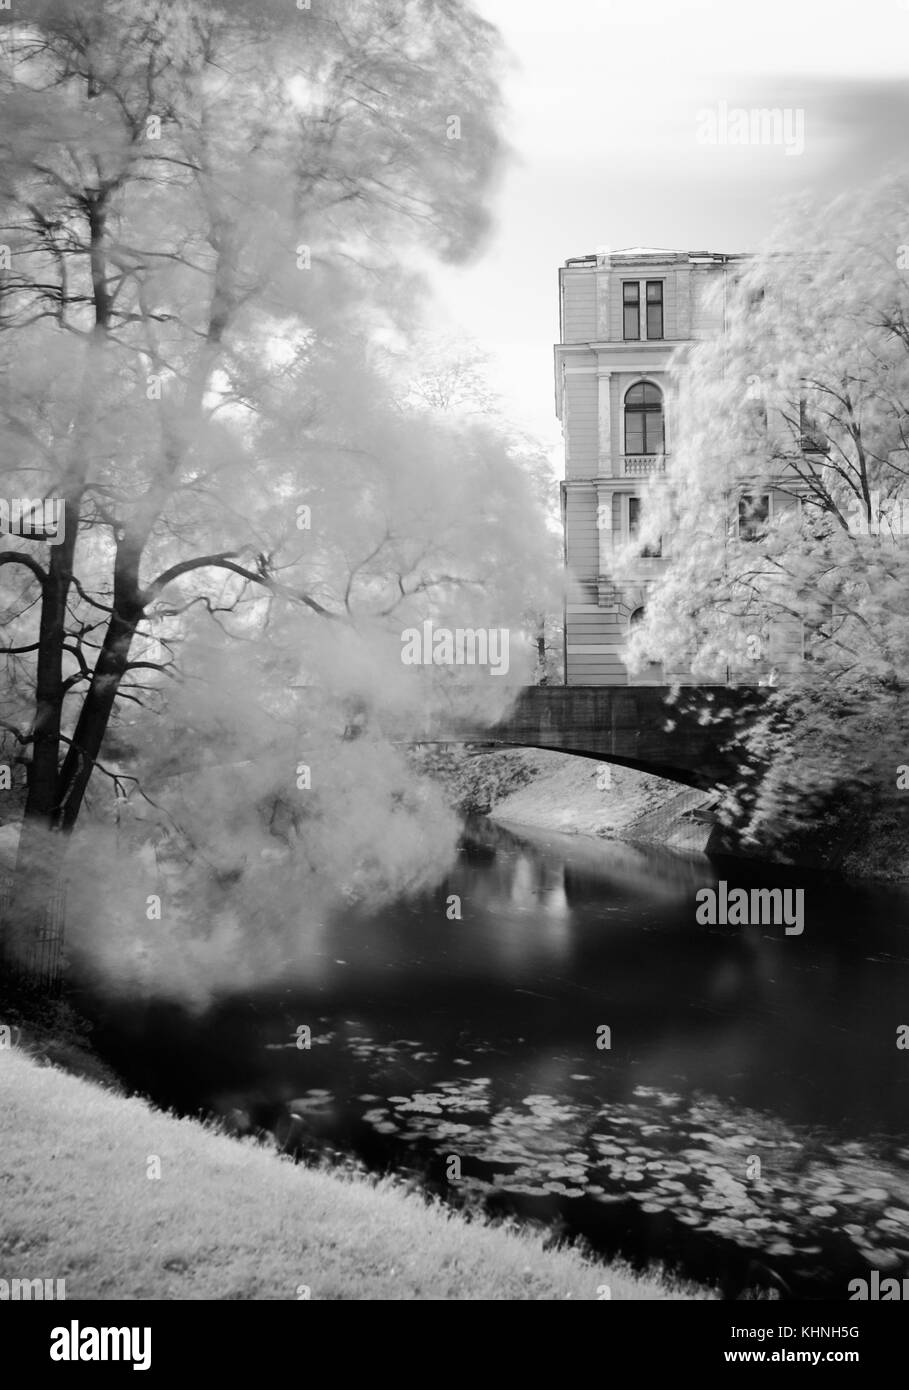 Eine schwarzweiß-IR-Filter Umwandlung einer Szene in einem Park mit einer Brücke über einen Kanal, Bäume mit weichen Bewegung in den Niederlassungen und ein altes Gebäude. Stockfoto